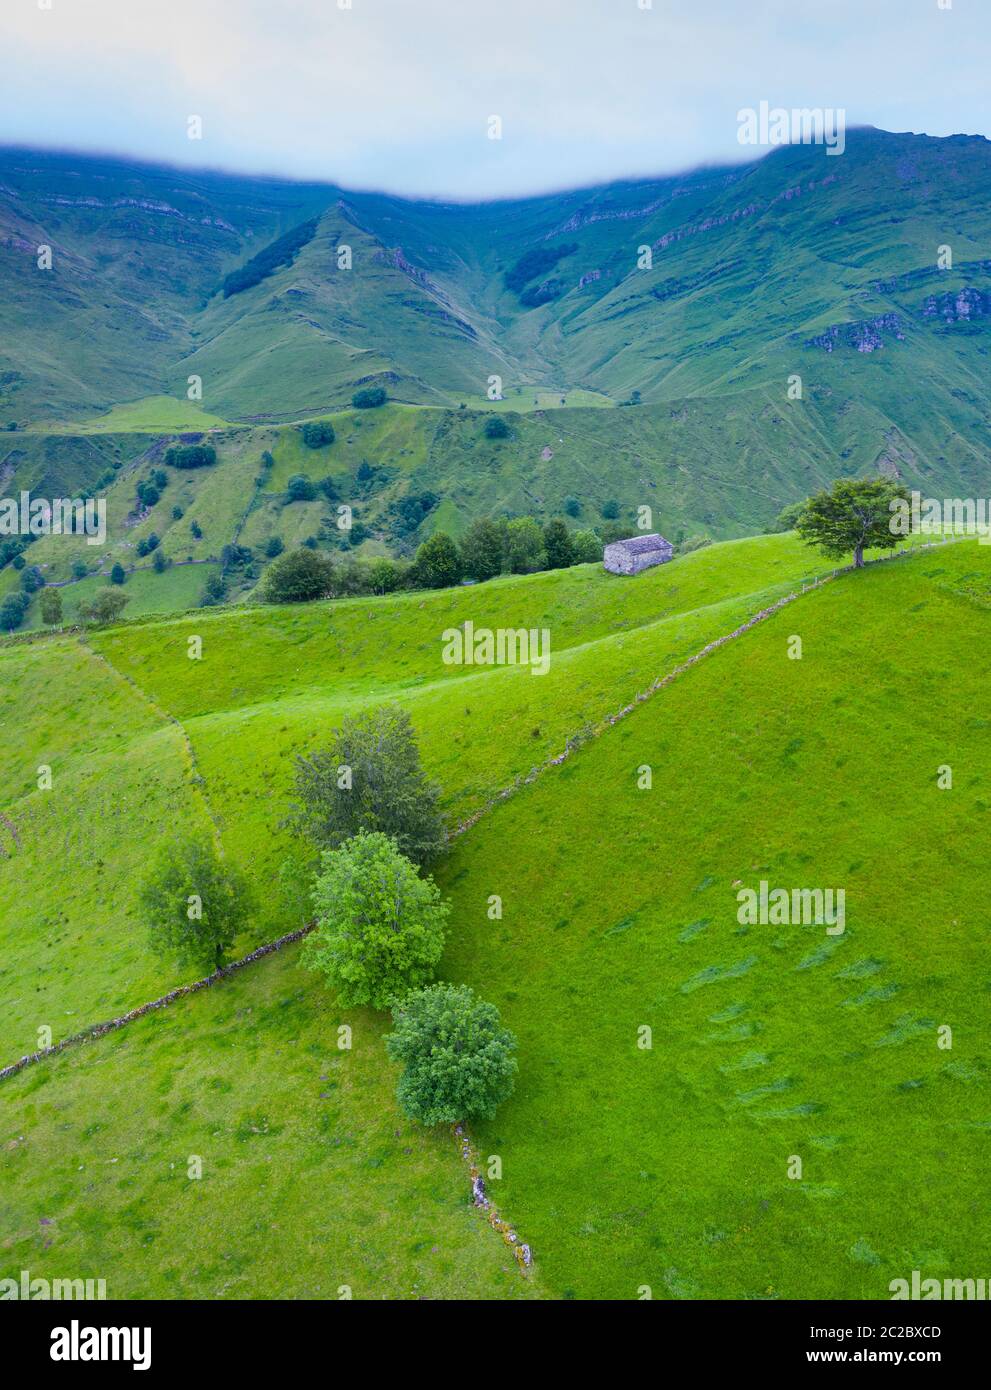 Vue aérienne avec un drone du paysage de printemps des chalets et des prairies de pasiegas dans la vallée de Miera, dans la Communauté autonome de Cantabrie. Espagne, Europe Banque D'Images